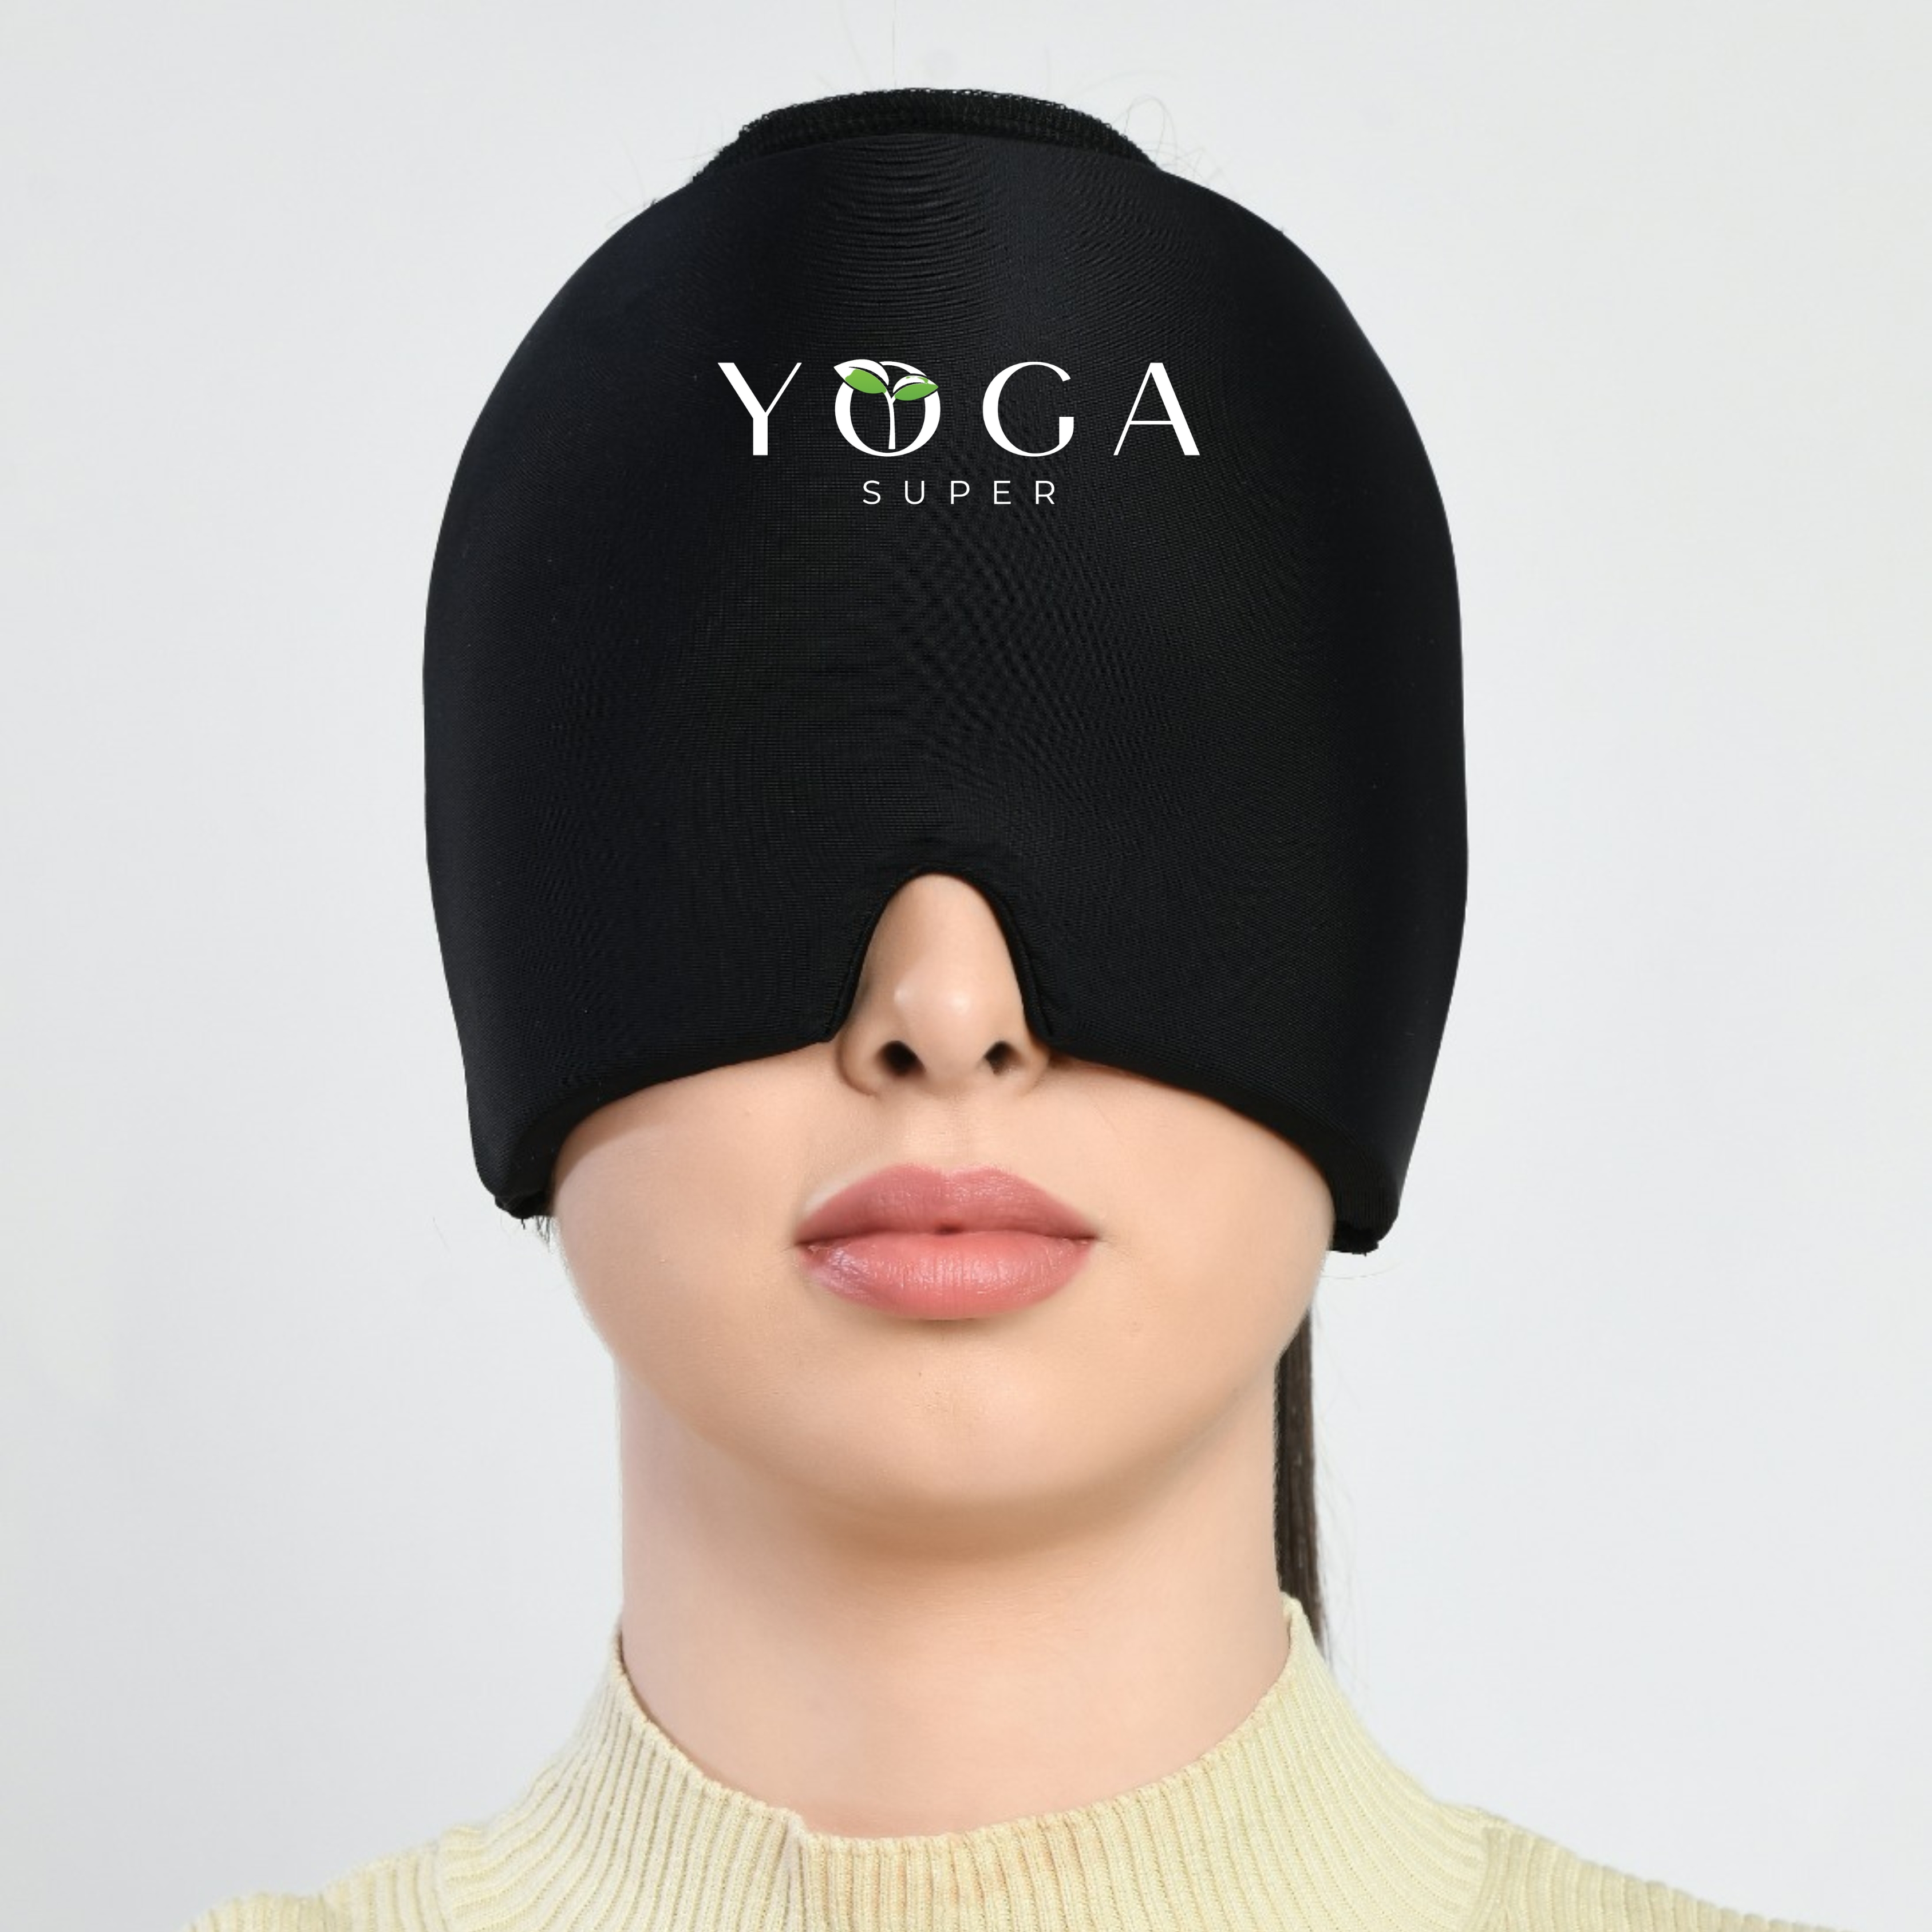 Yogasuper Migraine Cap